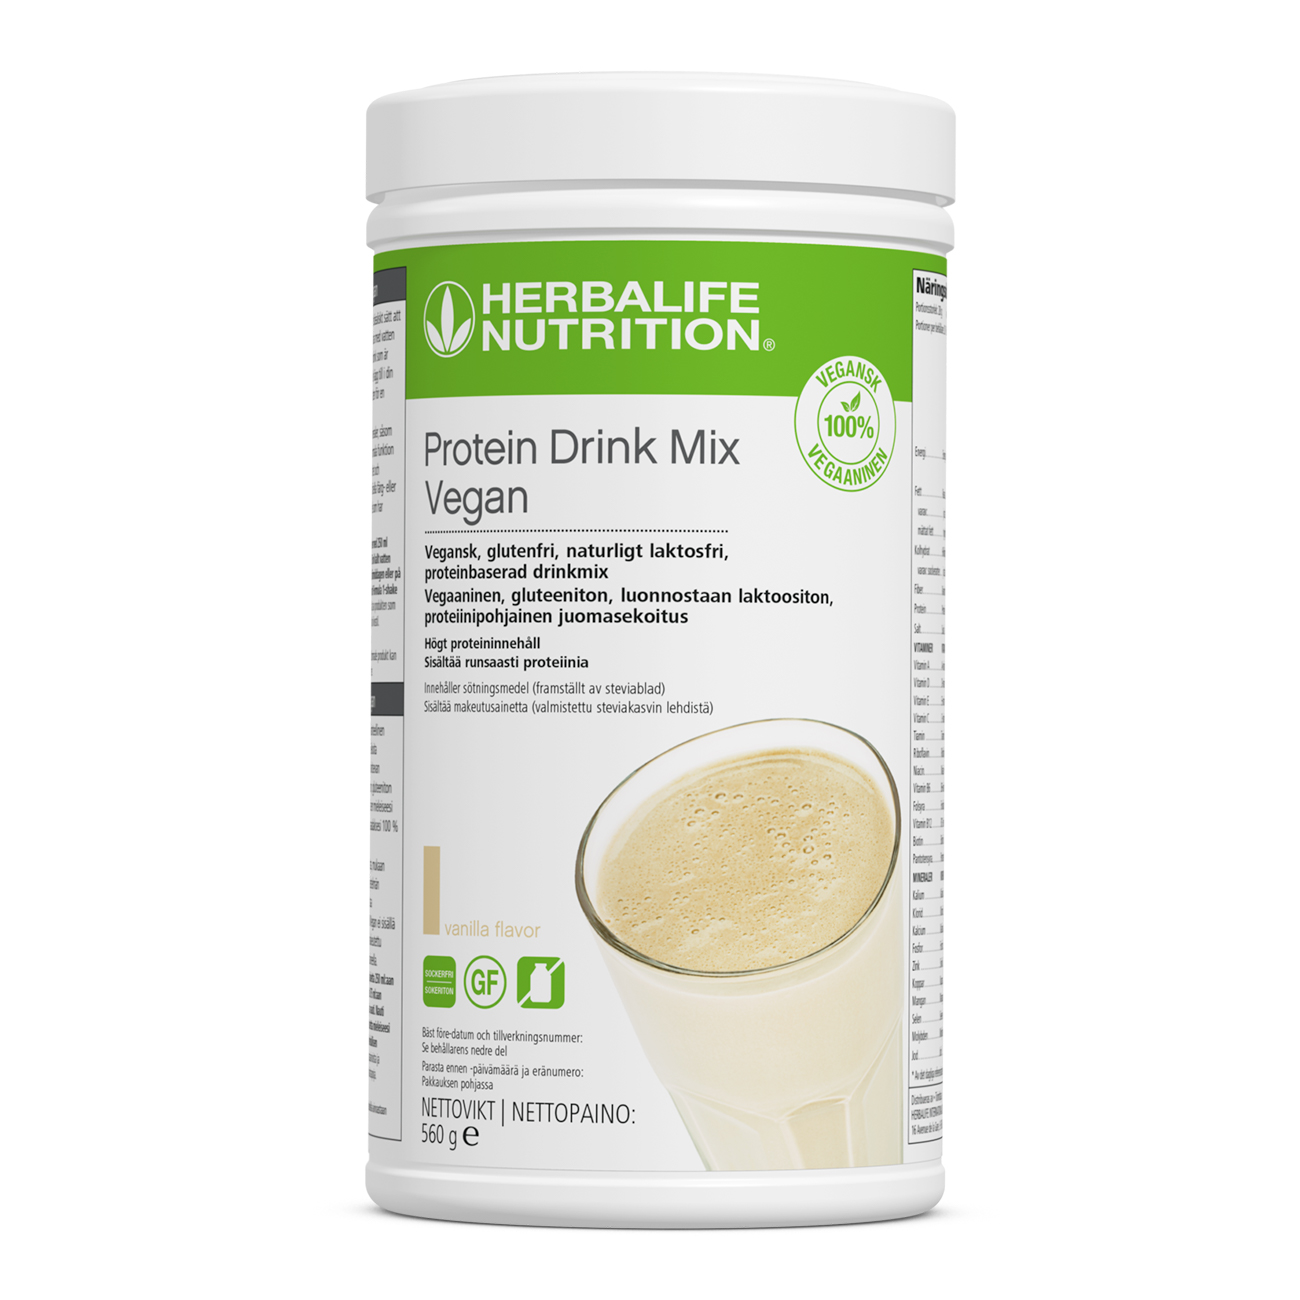 Protein Drink Mix-Vegan är ett idealiskt sätt att öka ditt proteinintag hela dagen. Kombinera med din favorit Formula 1 -shake för en hälsosam måltid som innehåller mycket protein och låg sockerhalt.